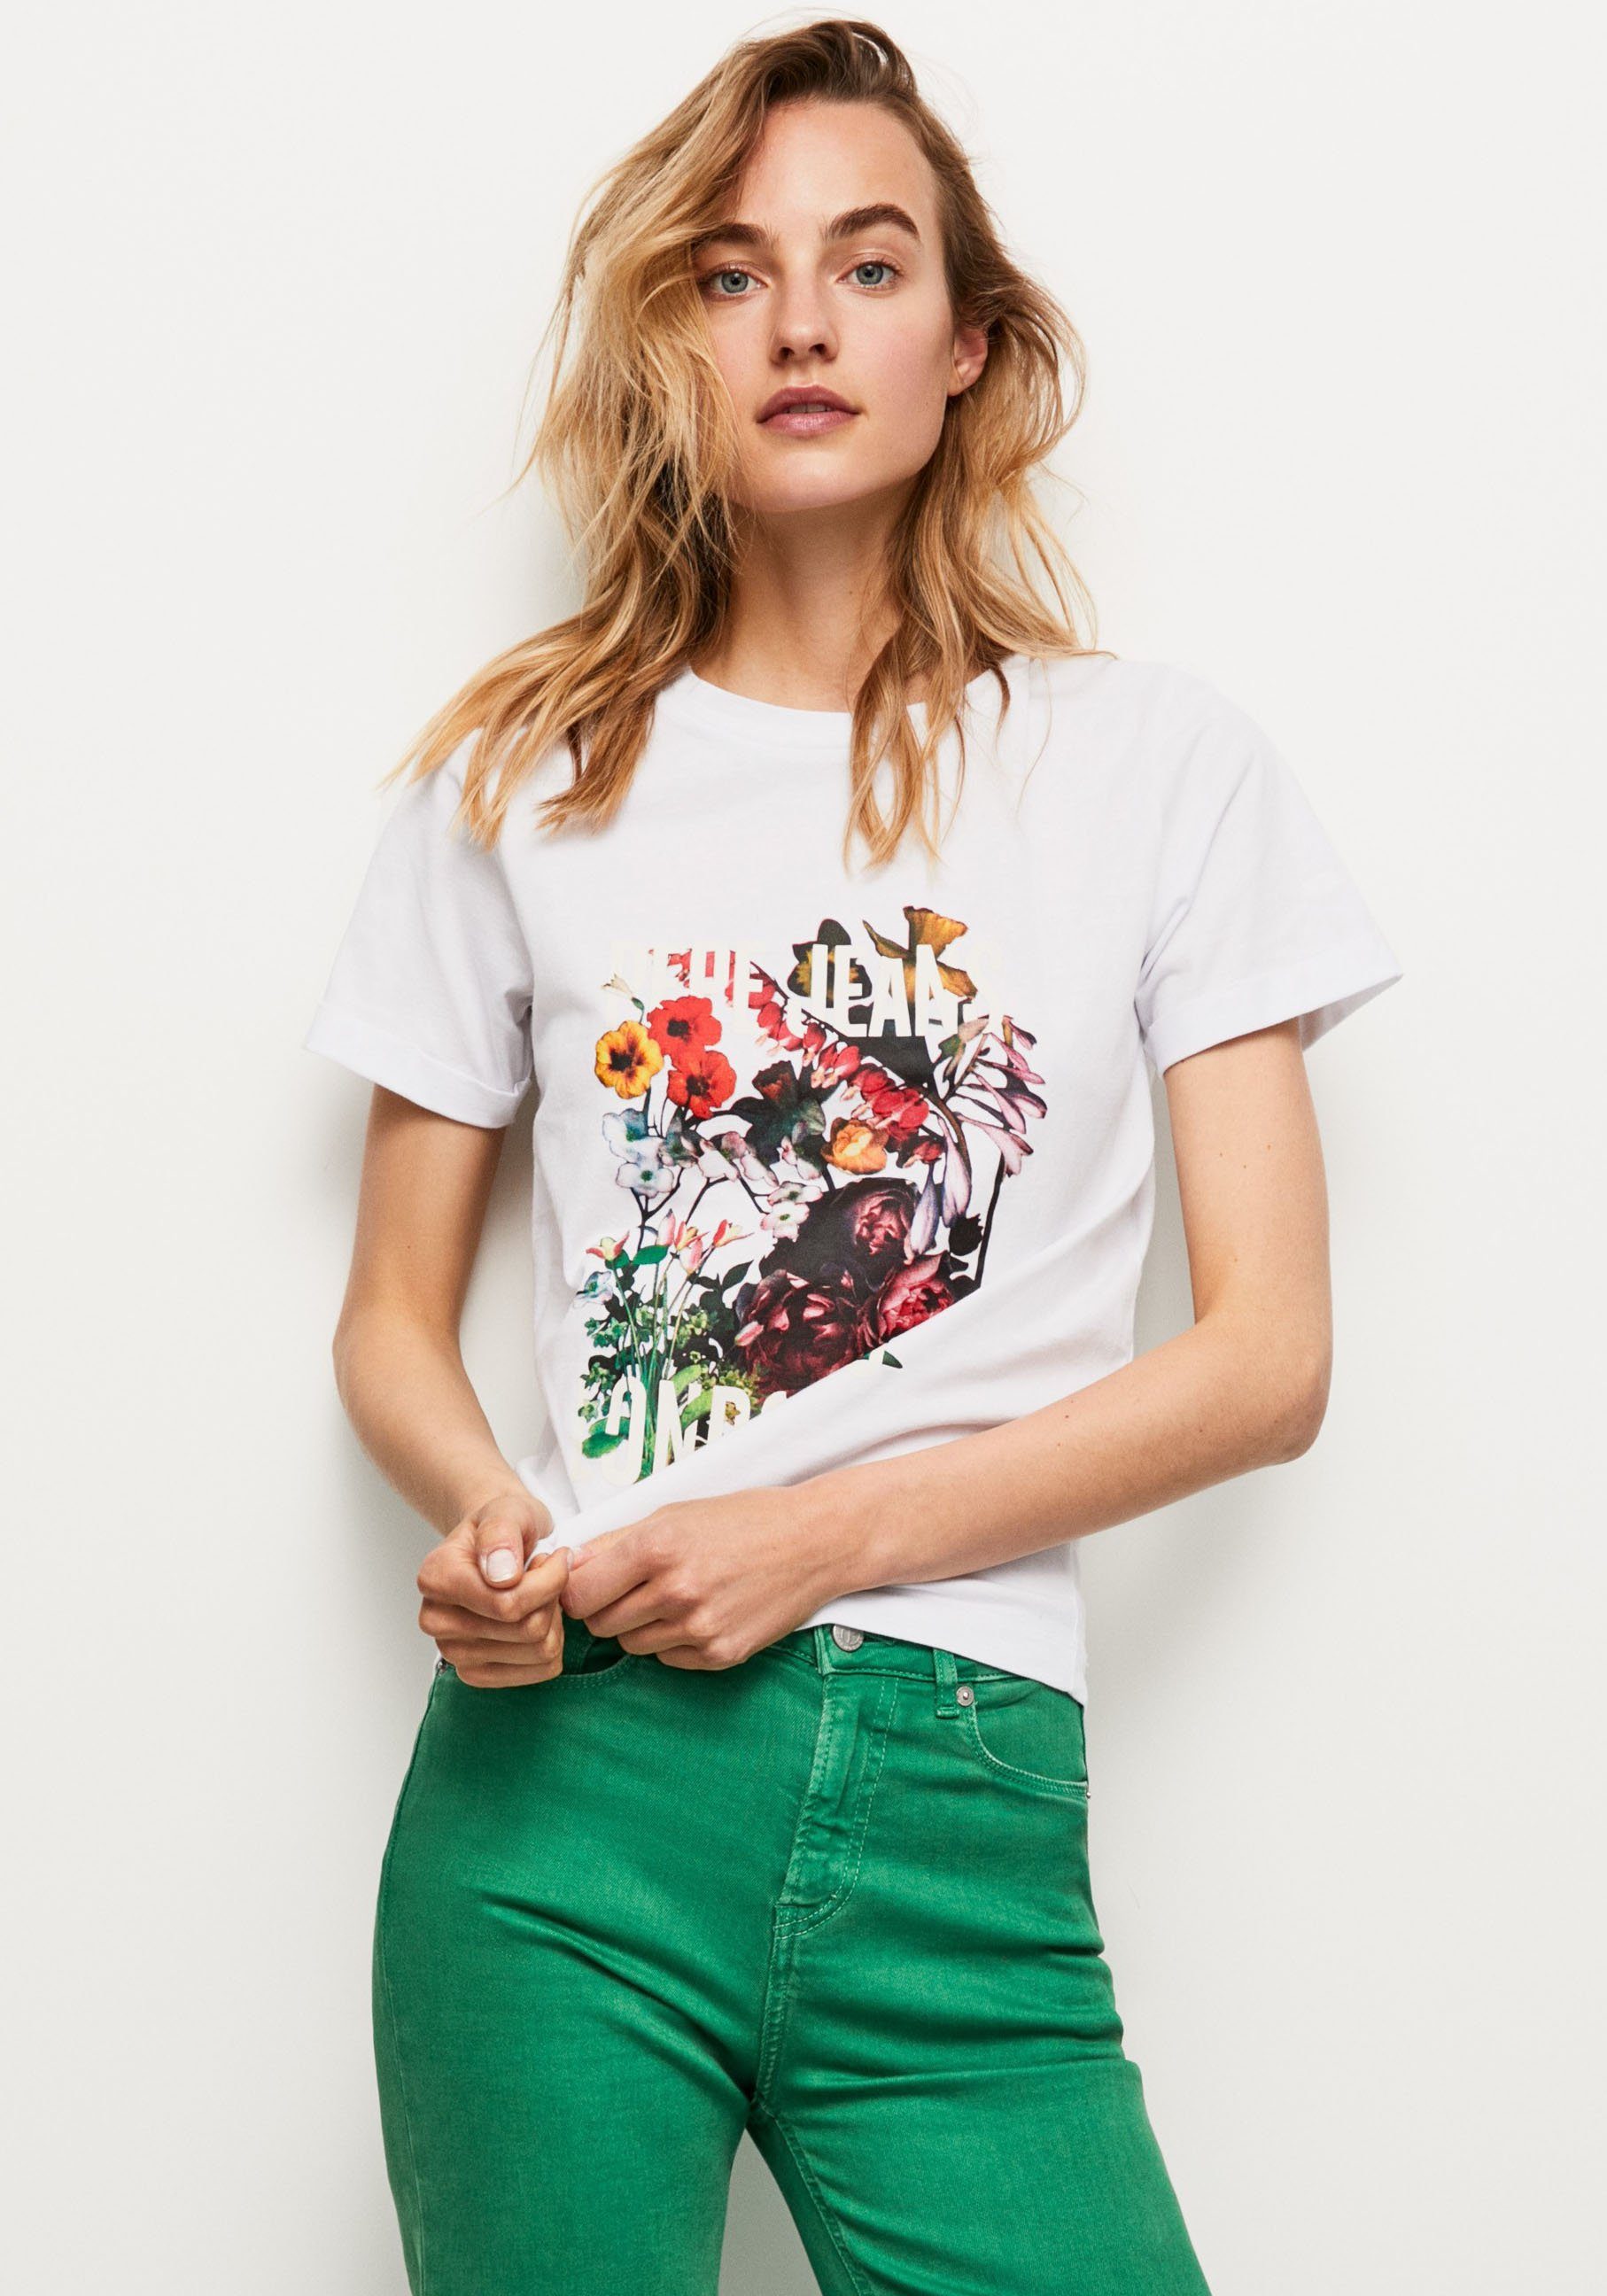 Pepe Jeans T-Shirt und oversized in mit 800WHITE Frontprint tollem Passform markentypischem